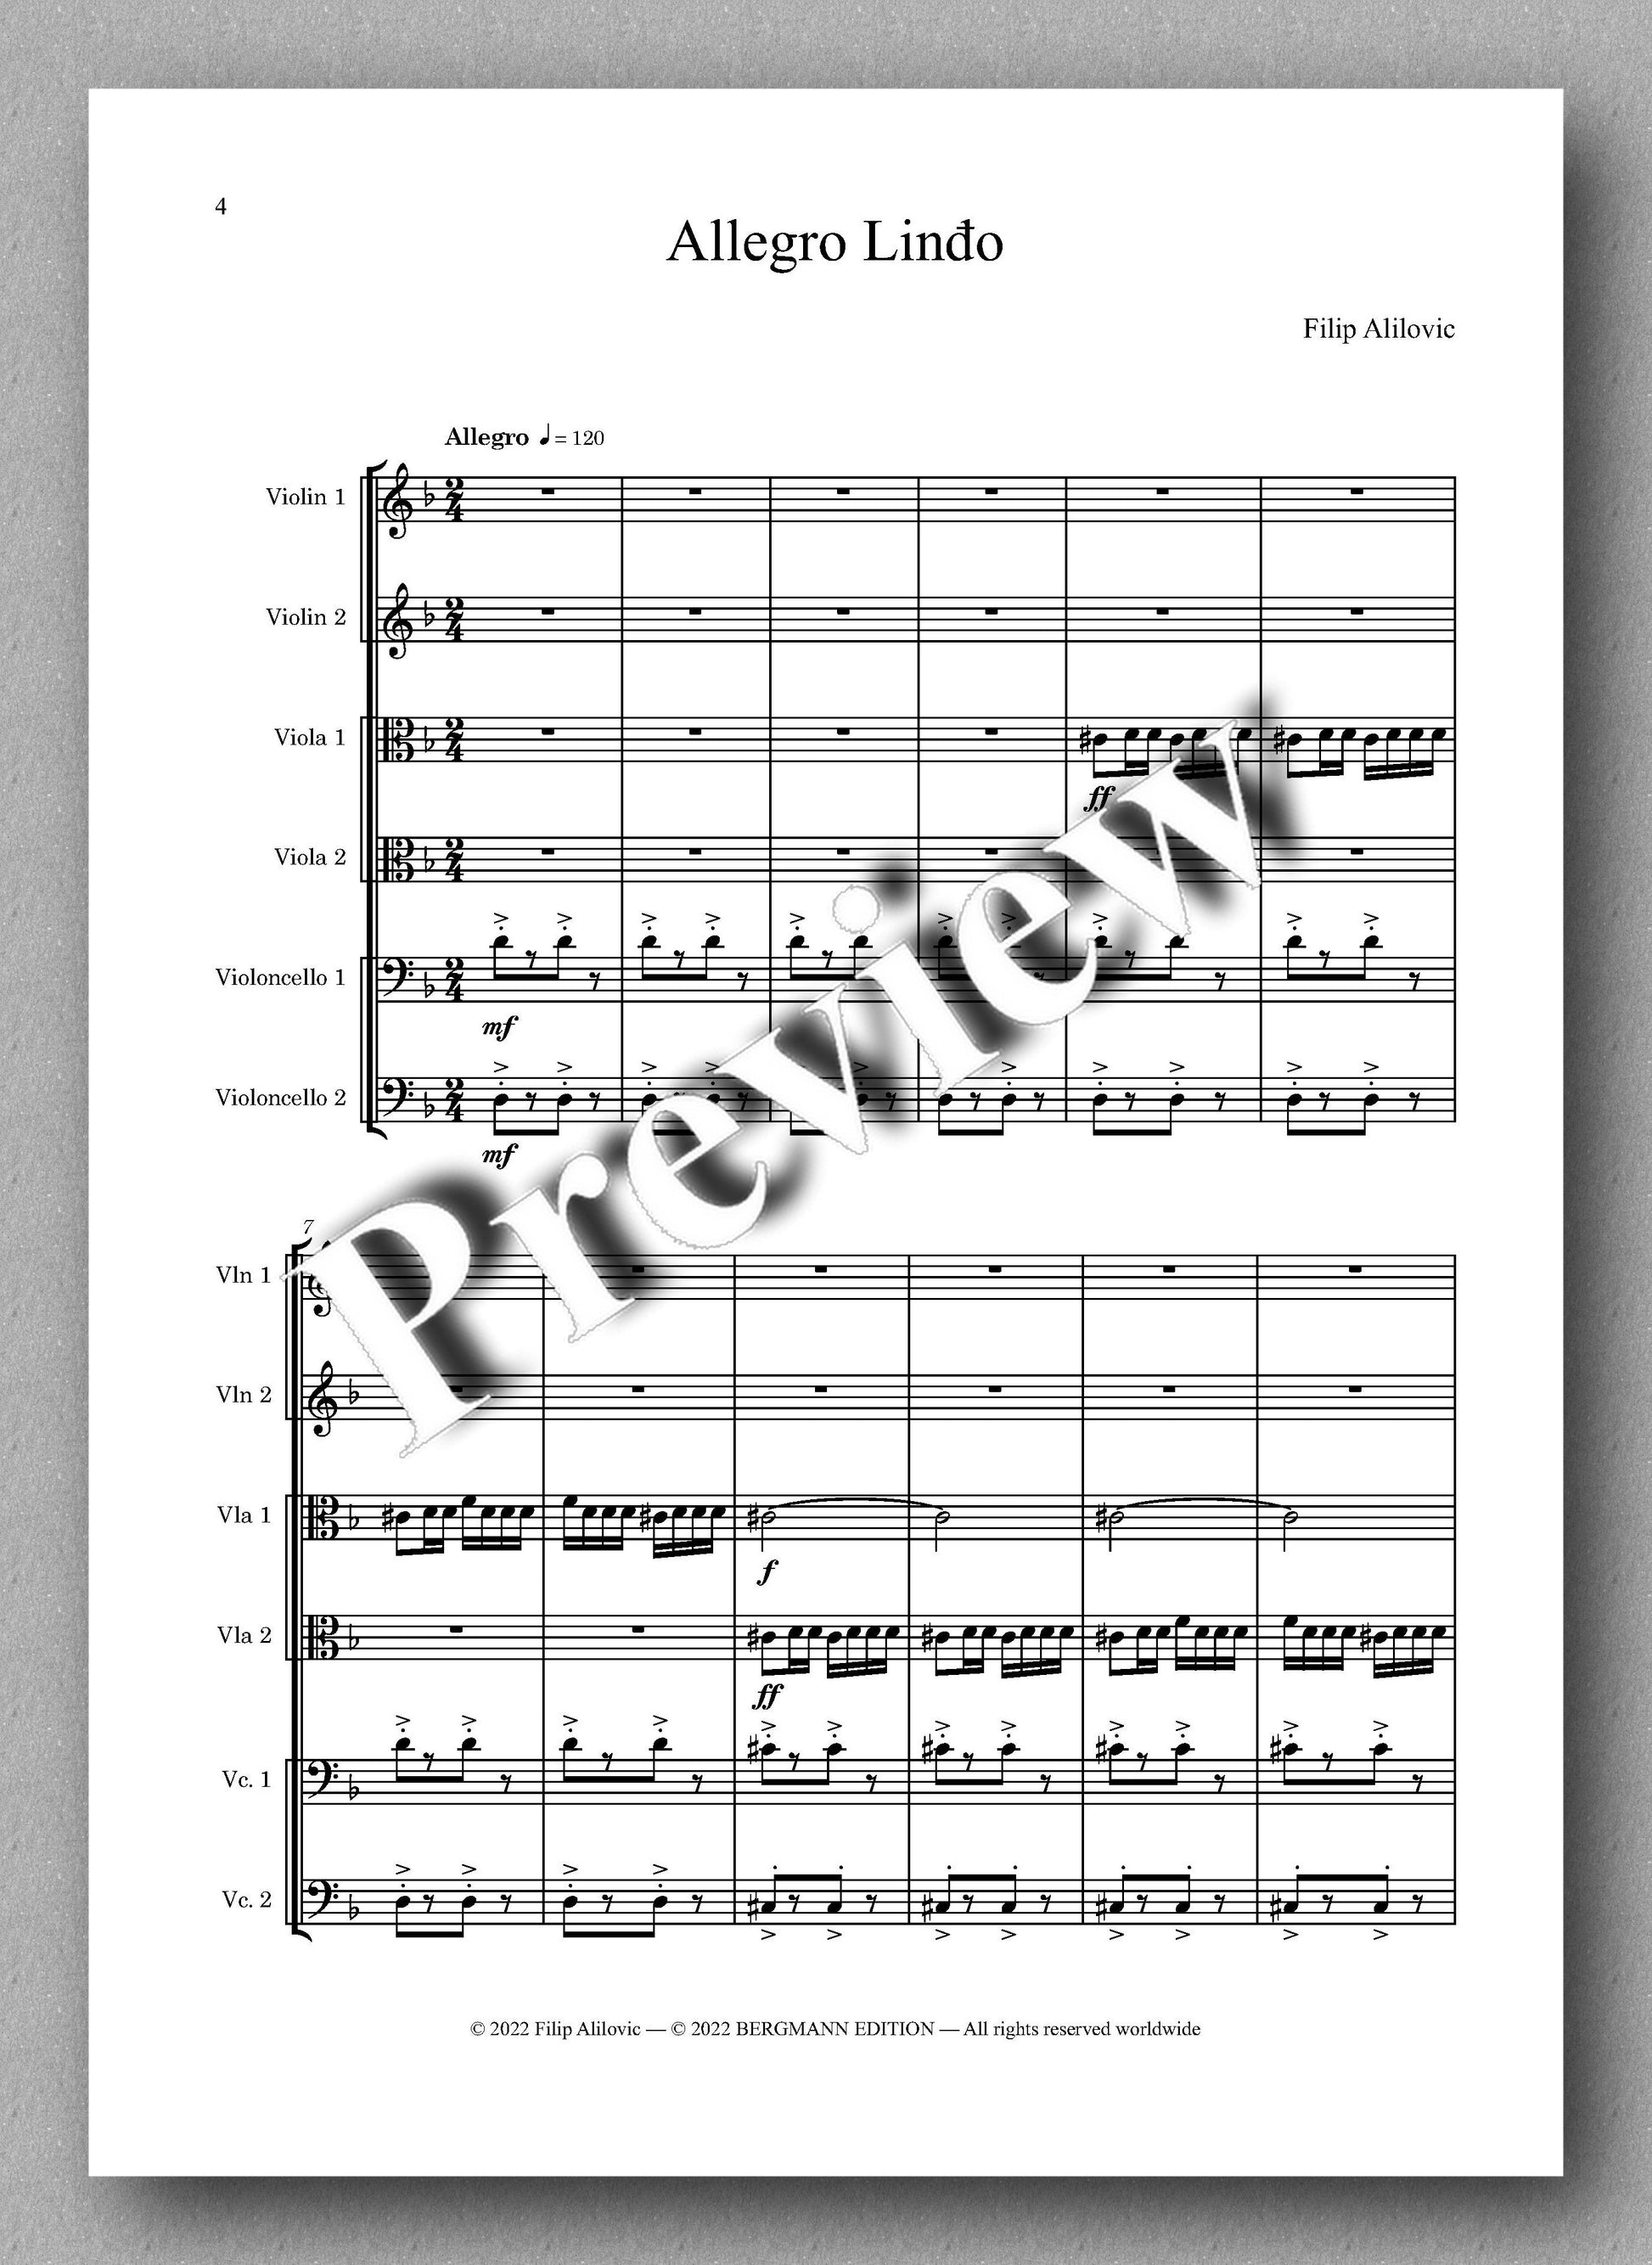 Filip Alilovic, Libertas - preview of the music score  1